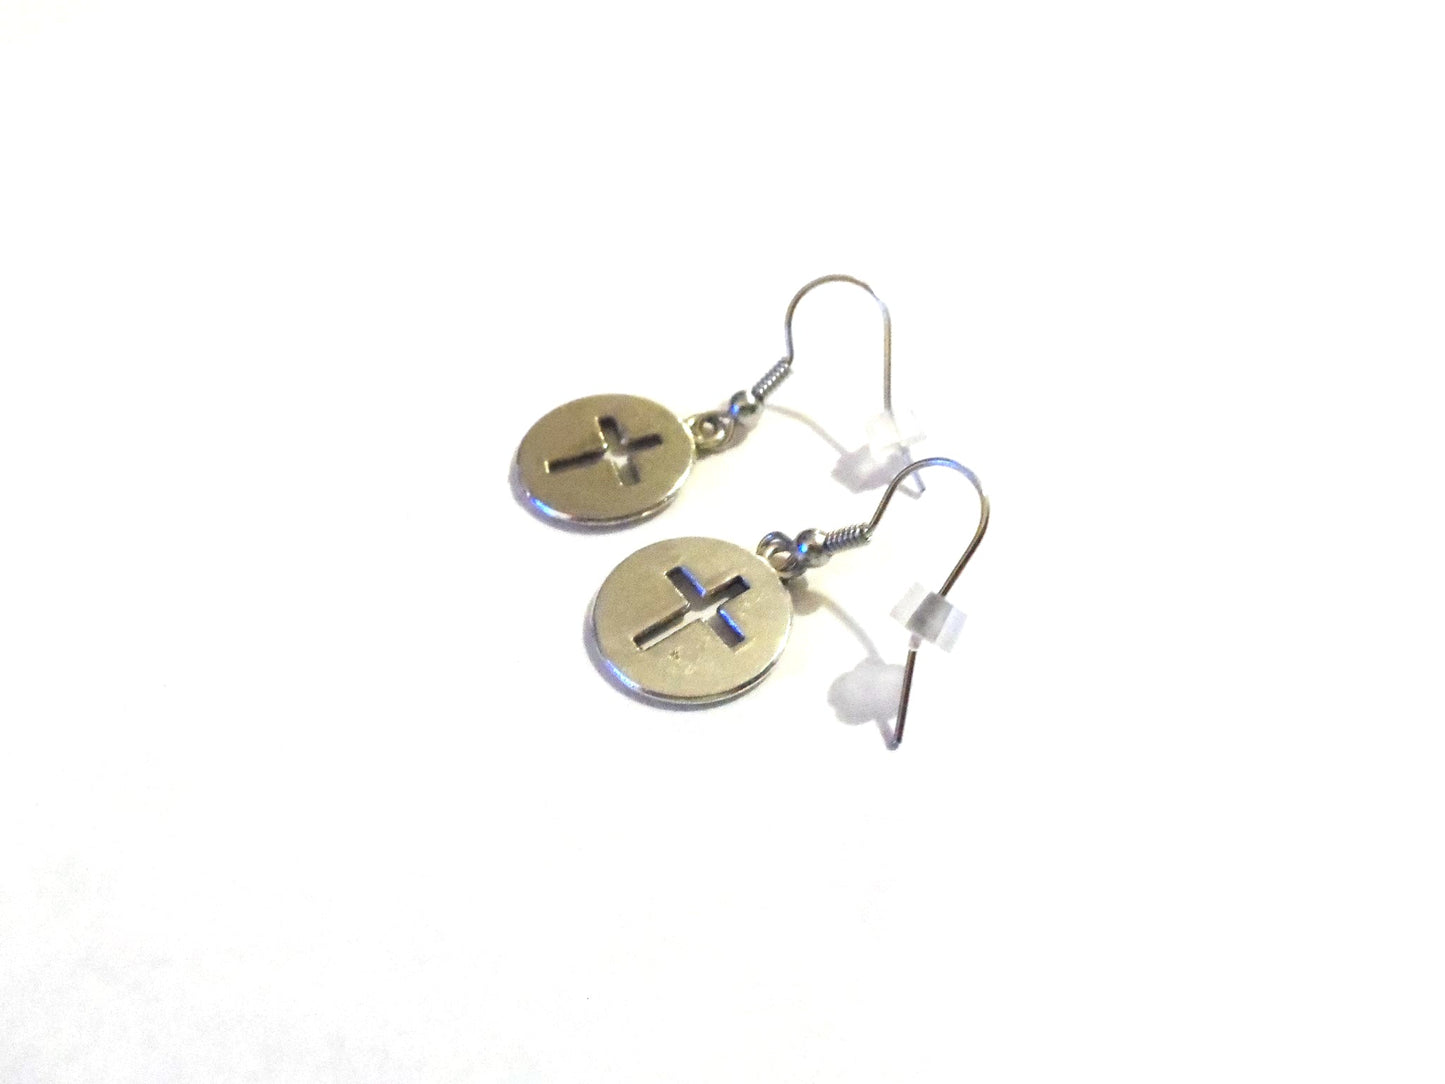 Small Silver Cross Dangle Earrings